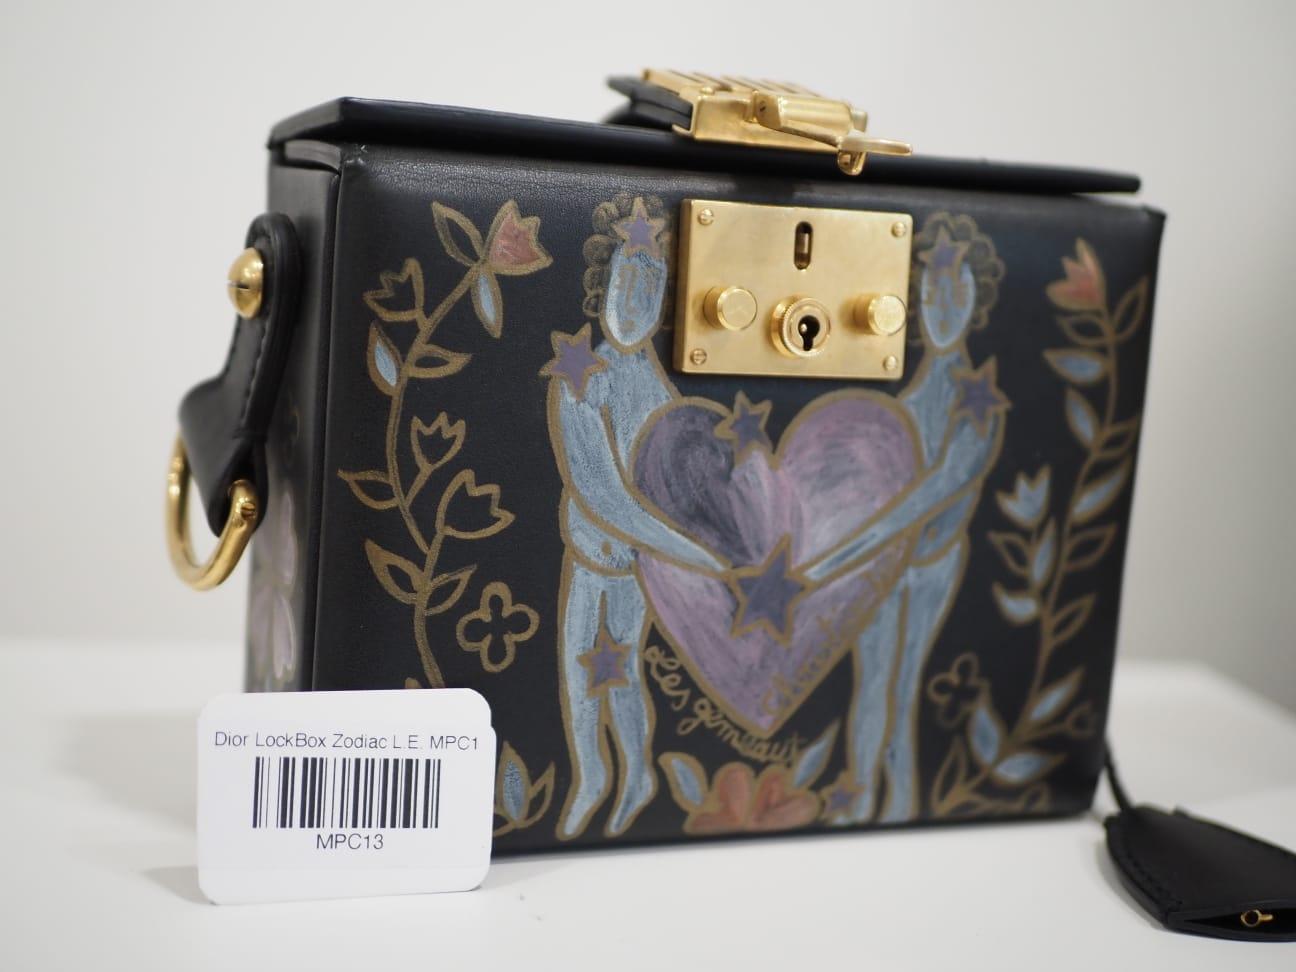 Christian Dior Addict Lockbox Zodiac shoulder bag 4